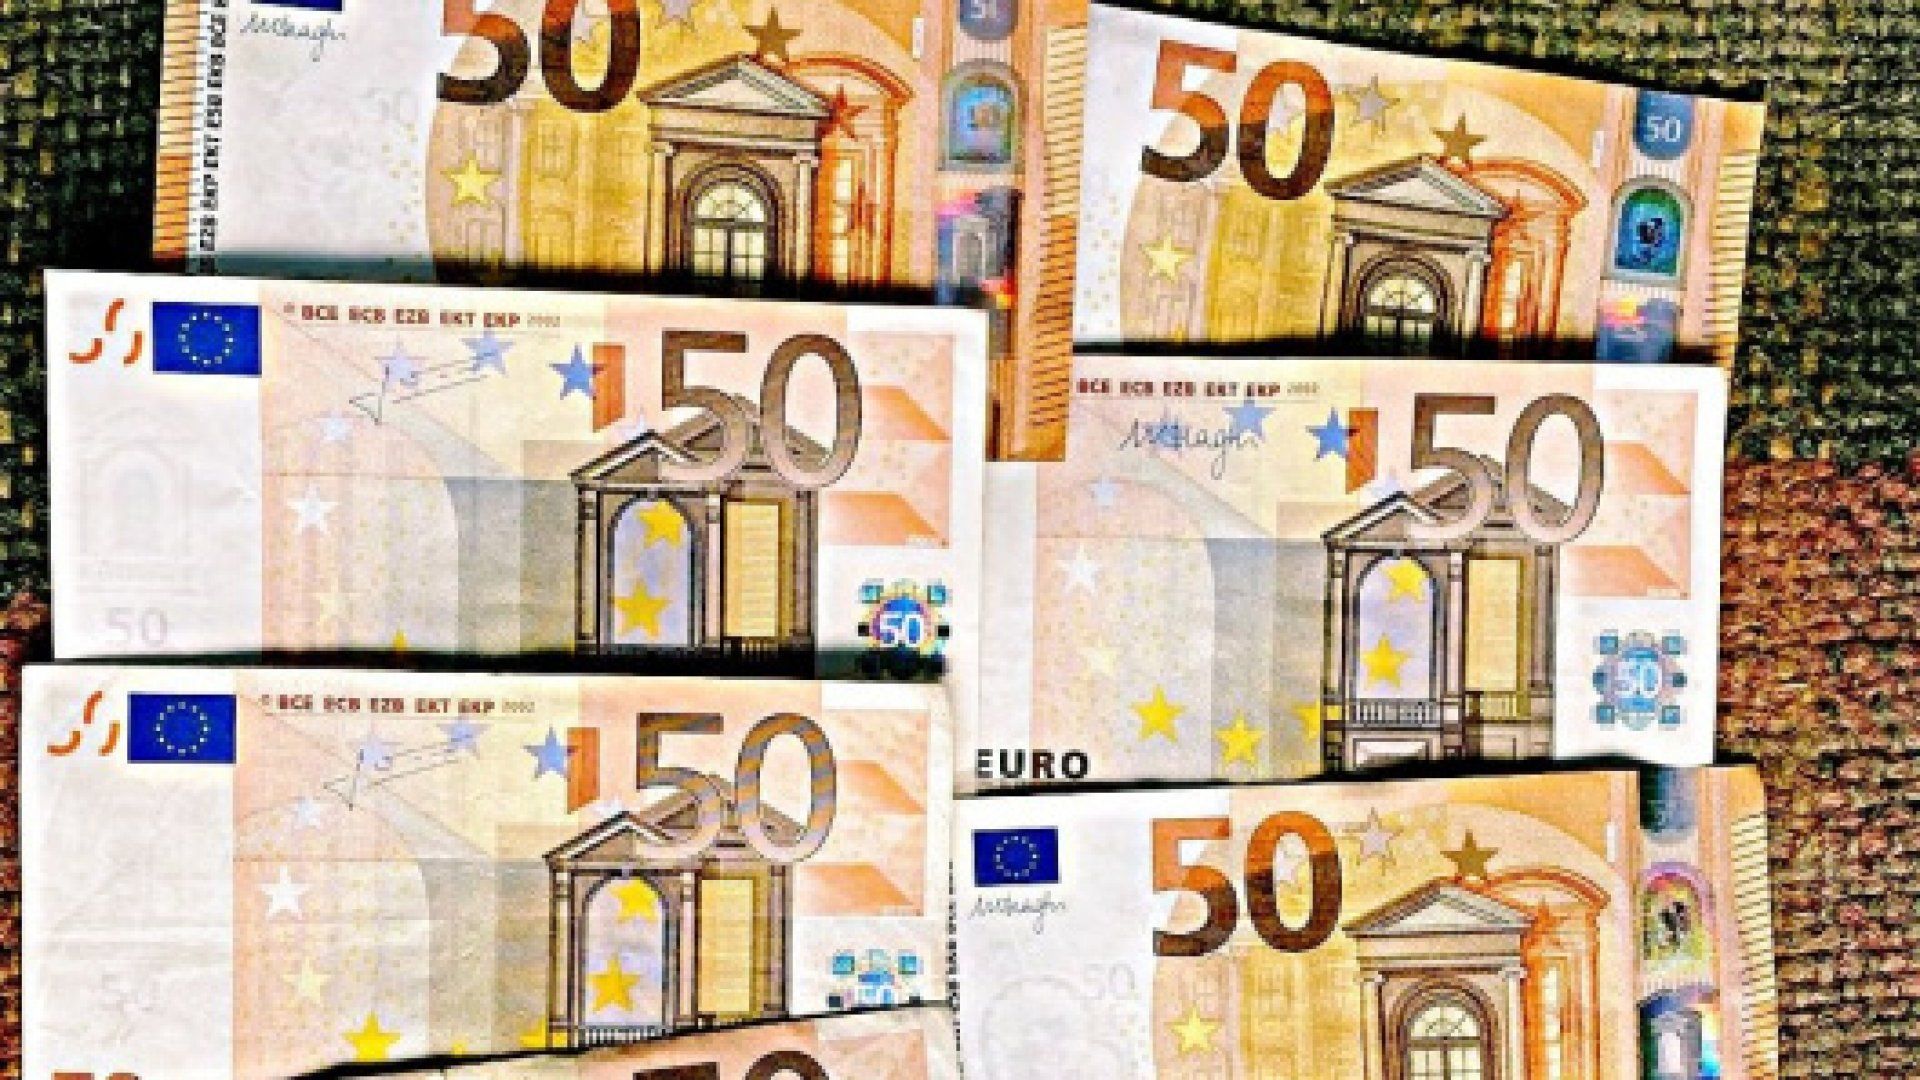 Un bărbat din Edineț a șantajat și a cerut sute de euro de la o femeie pentru a nu publica imagini intime cu ea. Ce a urmat18+)